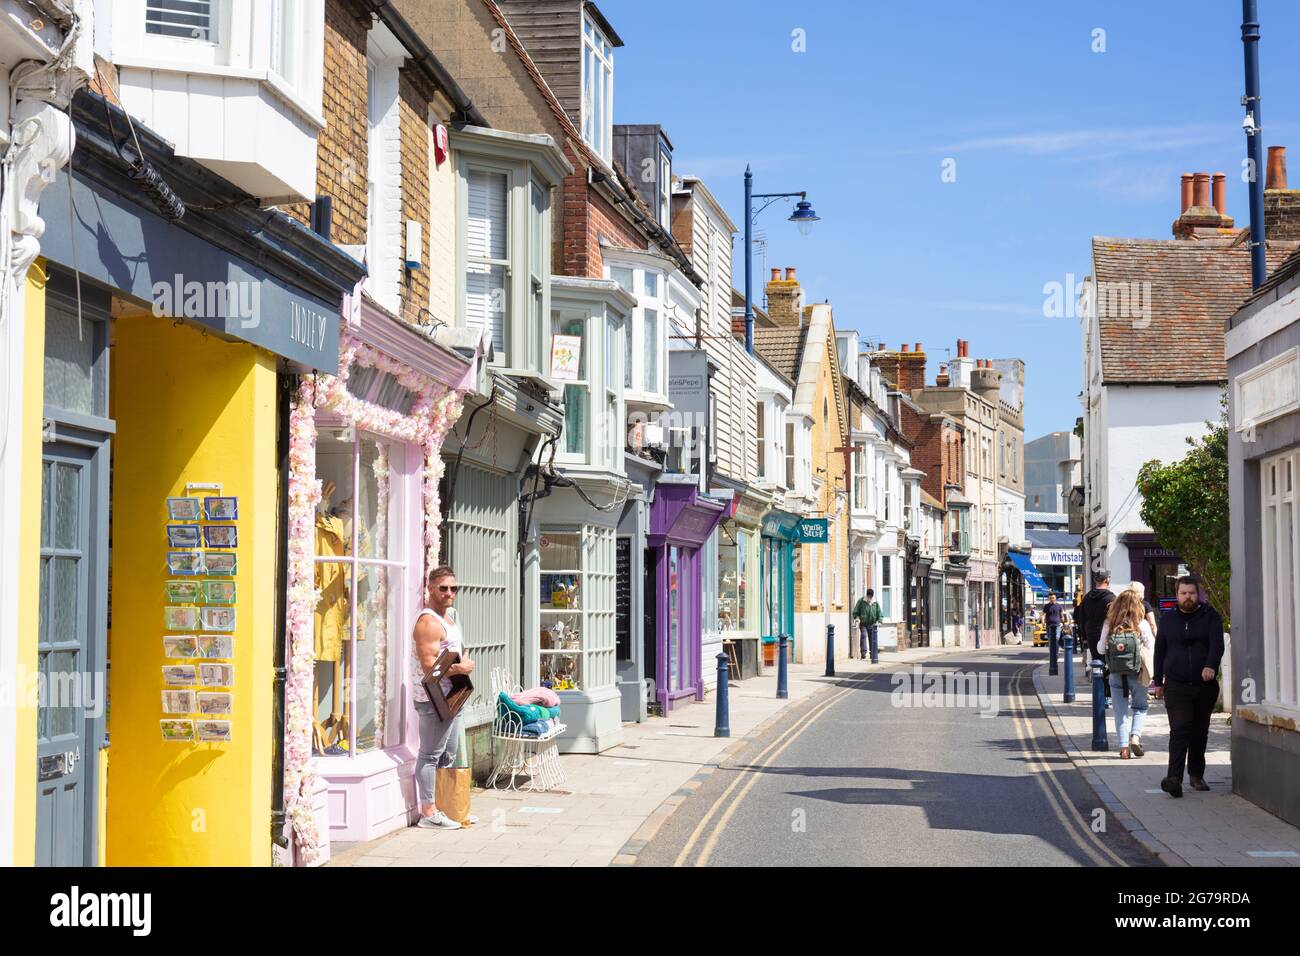 Boutiques aux couleurs vives dans le centre-ville de Harbour Street Whitstable Kent England GB Europe Banque D'Images